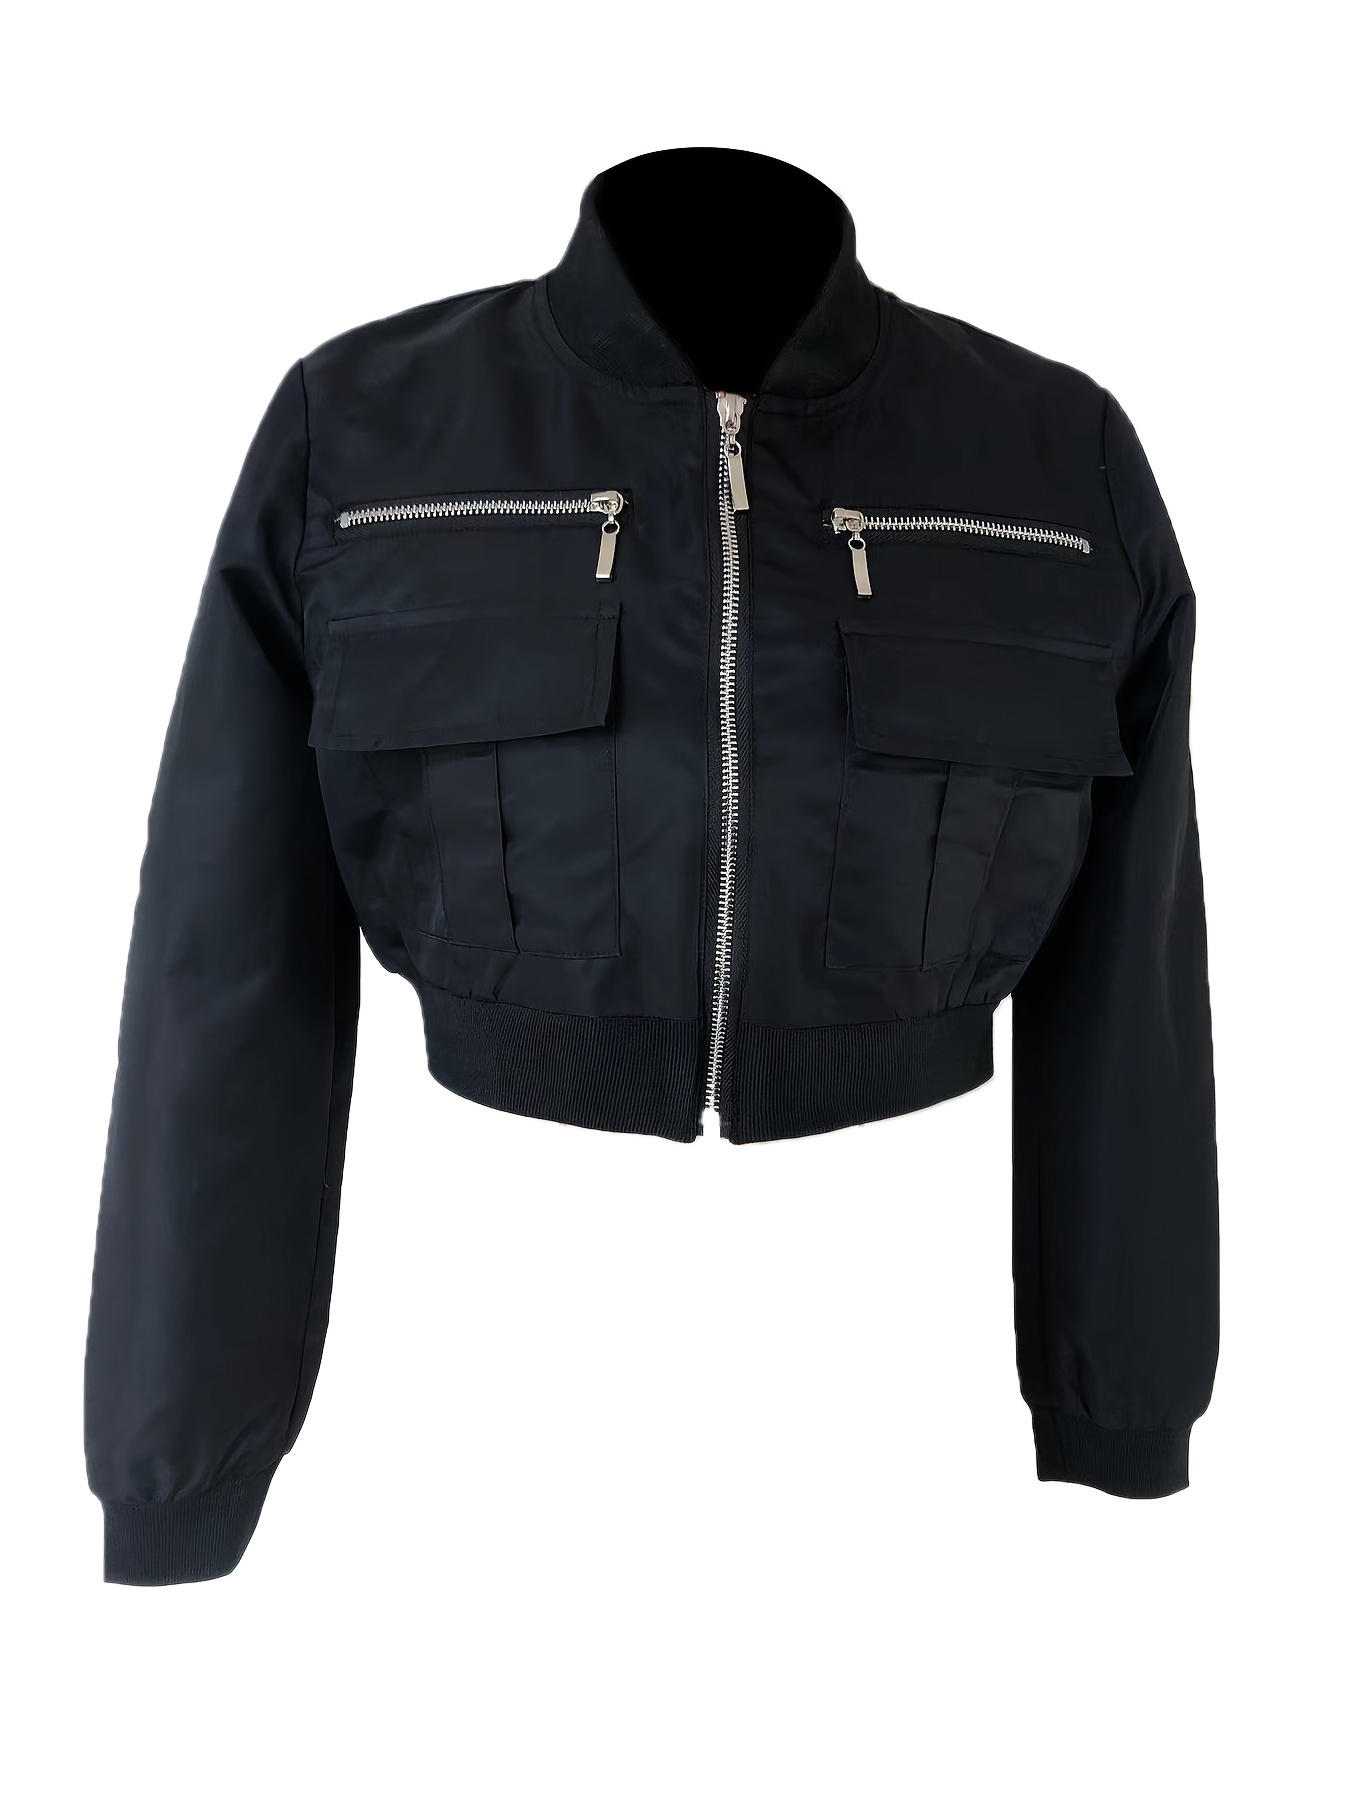 Buy online Black Solid Long Sleeves Summer Crop Jacket from